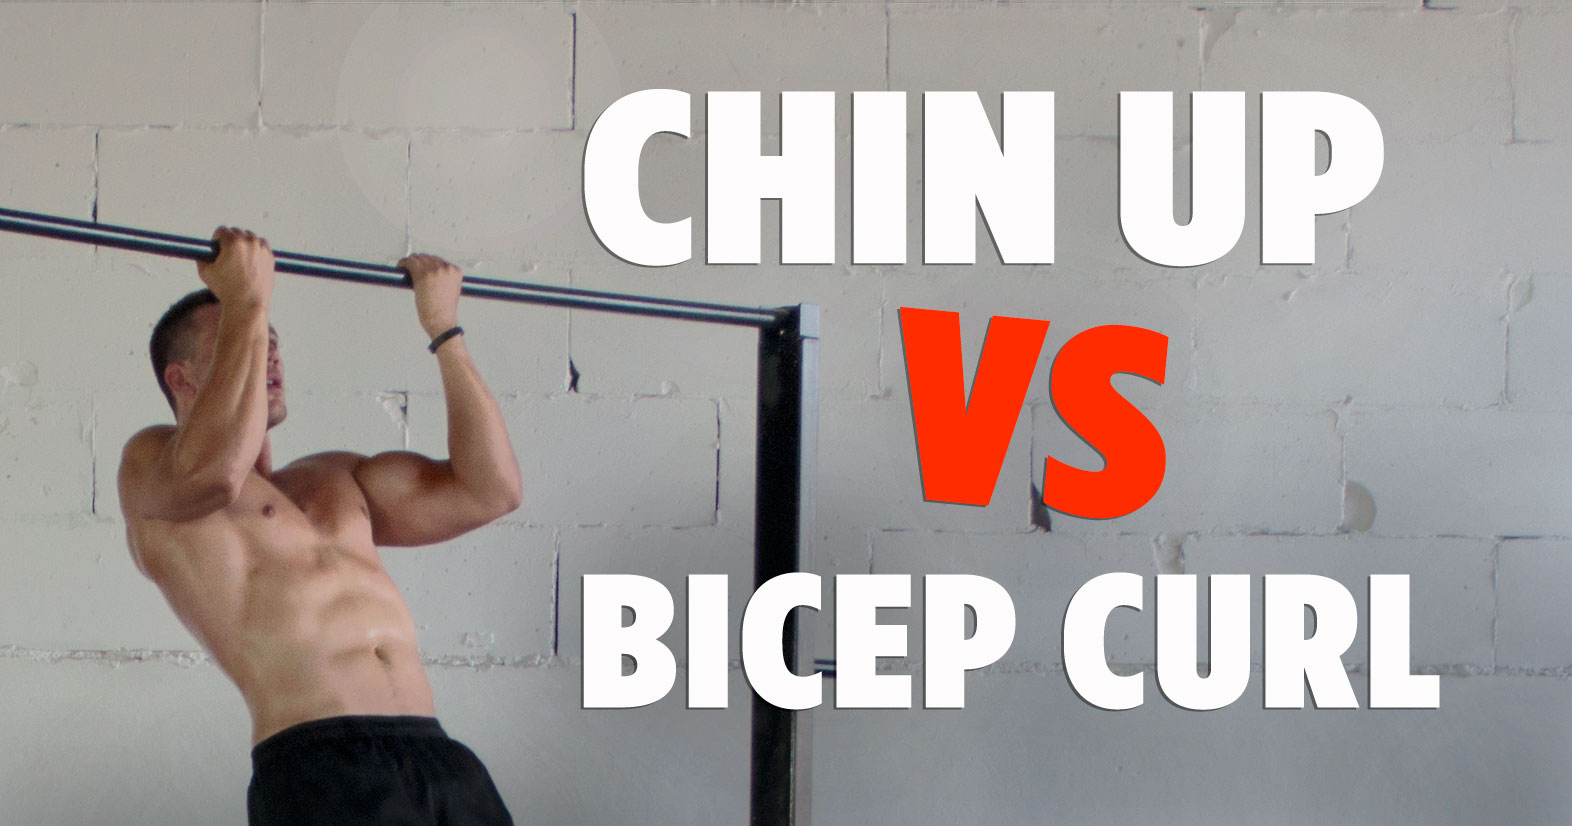 Want Bigger Biceps? Do More Chin Ups!